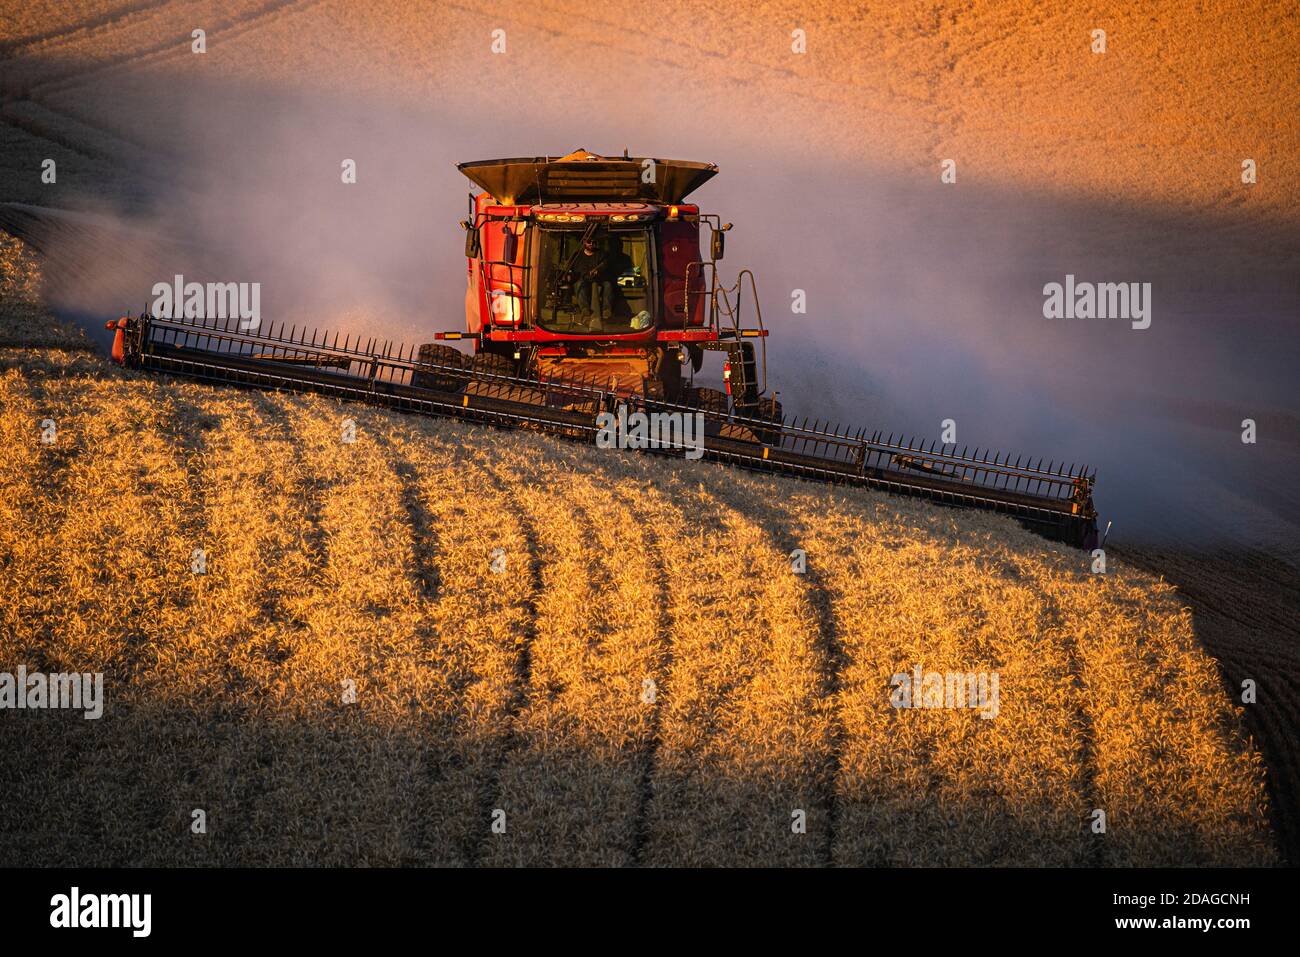 La mietitrebbia CaseIH raccoglie il grano sulle colline del Palouse Regione di Washington orientale Foto Stock